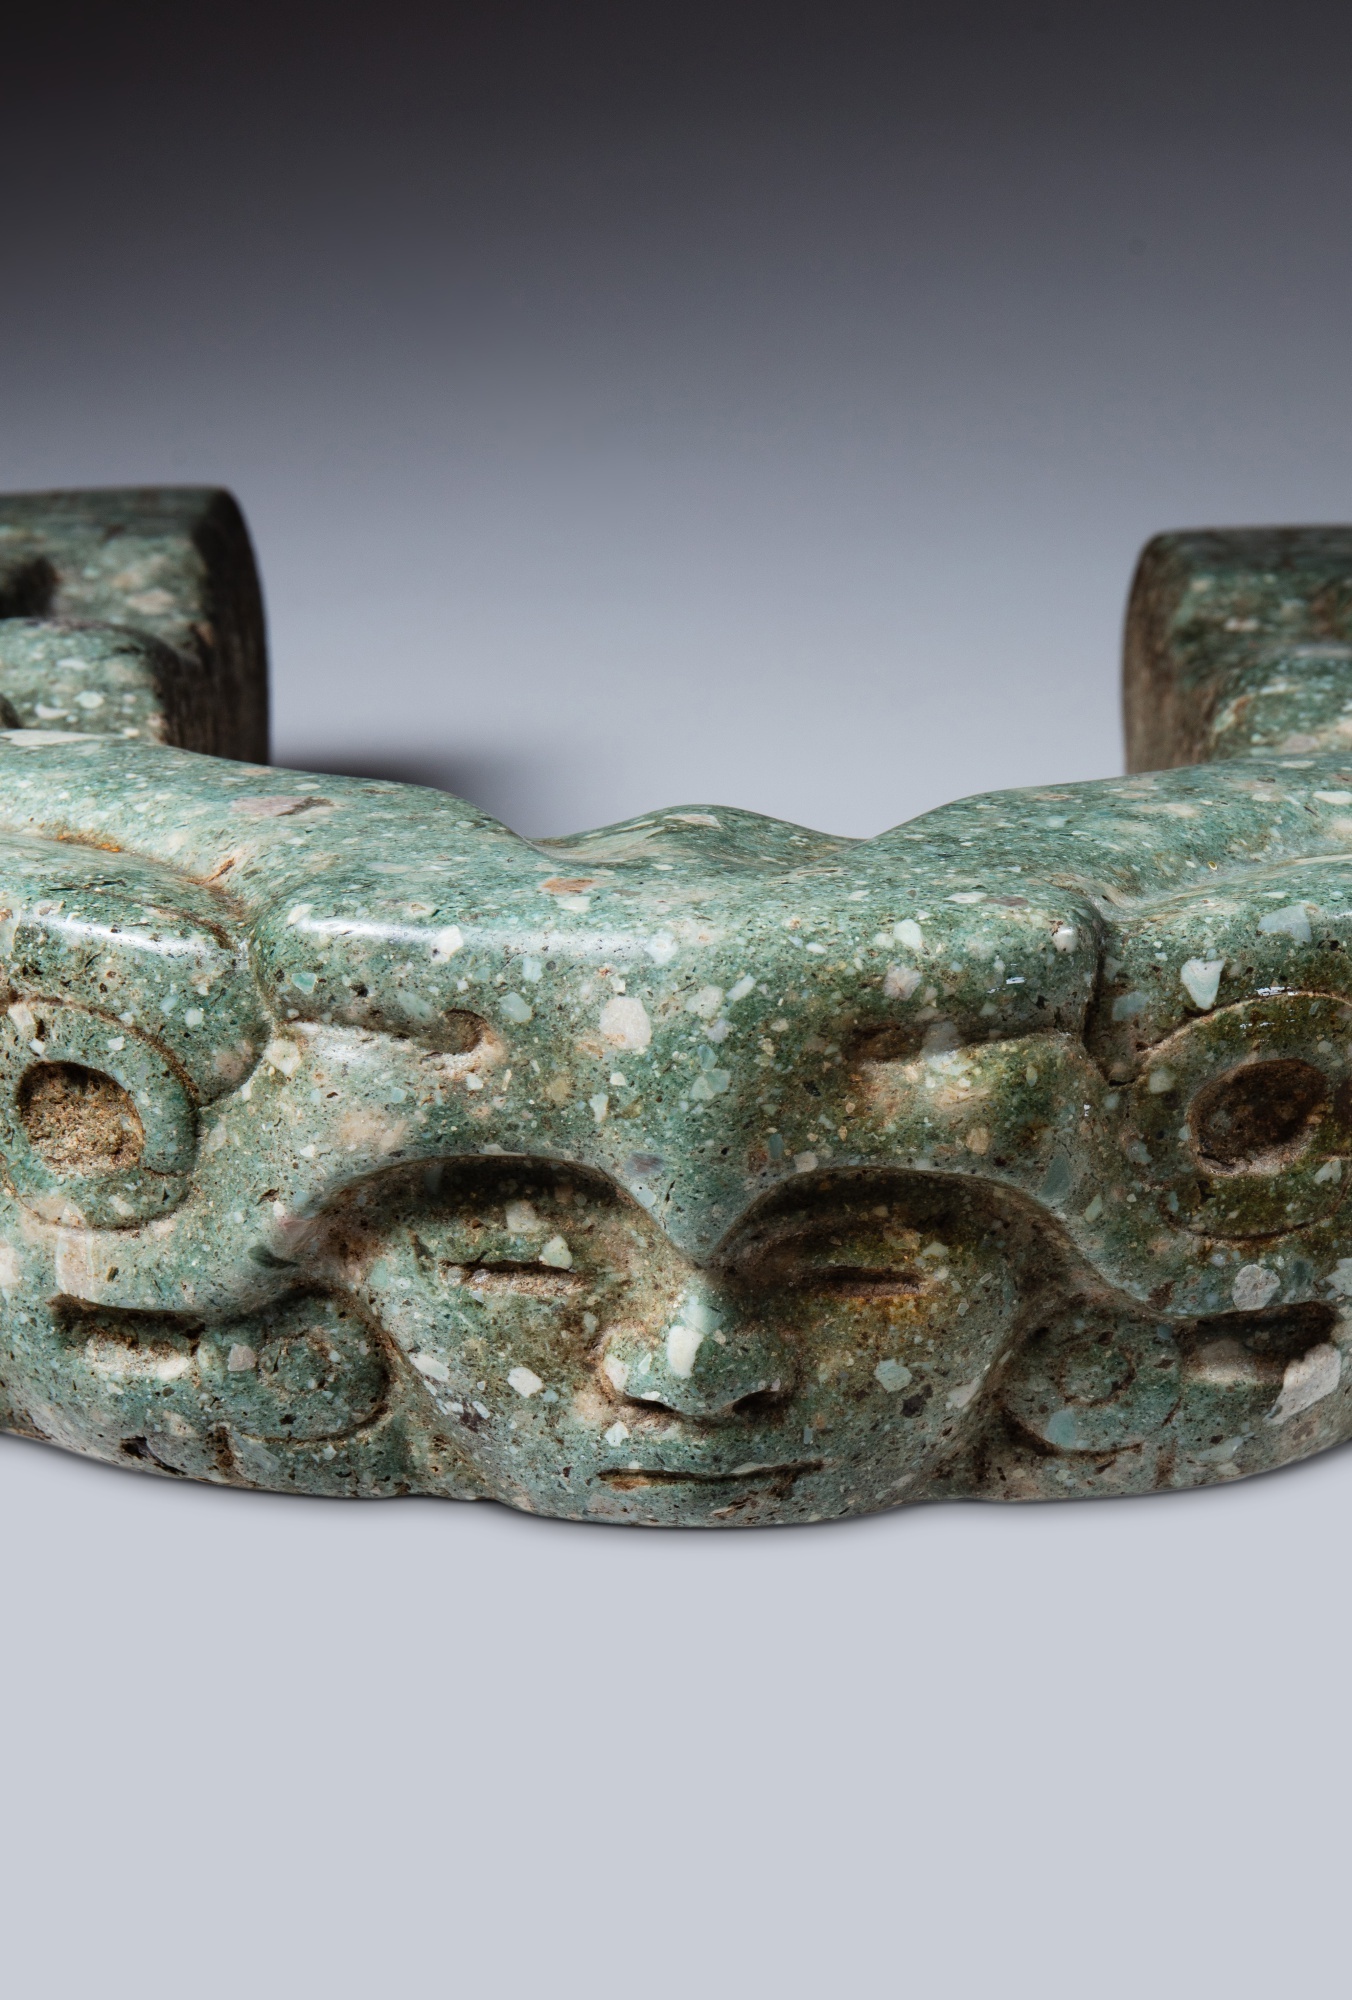 Joug, Veracruz, ca. 650 - 950 ap. J-C. | Veracruz Stone Yoke, ca. AD 650 - 950 - Image 2 of 7